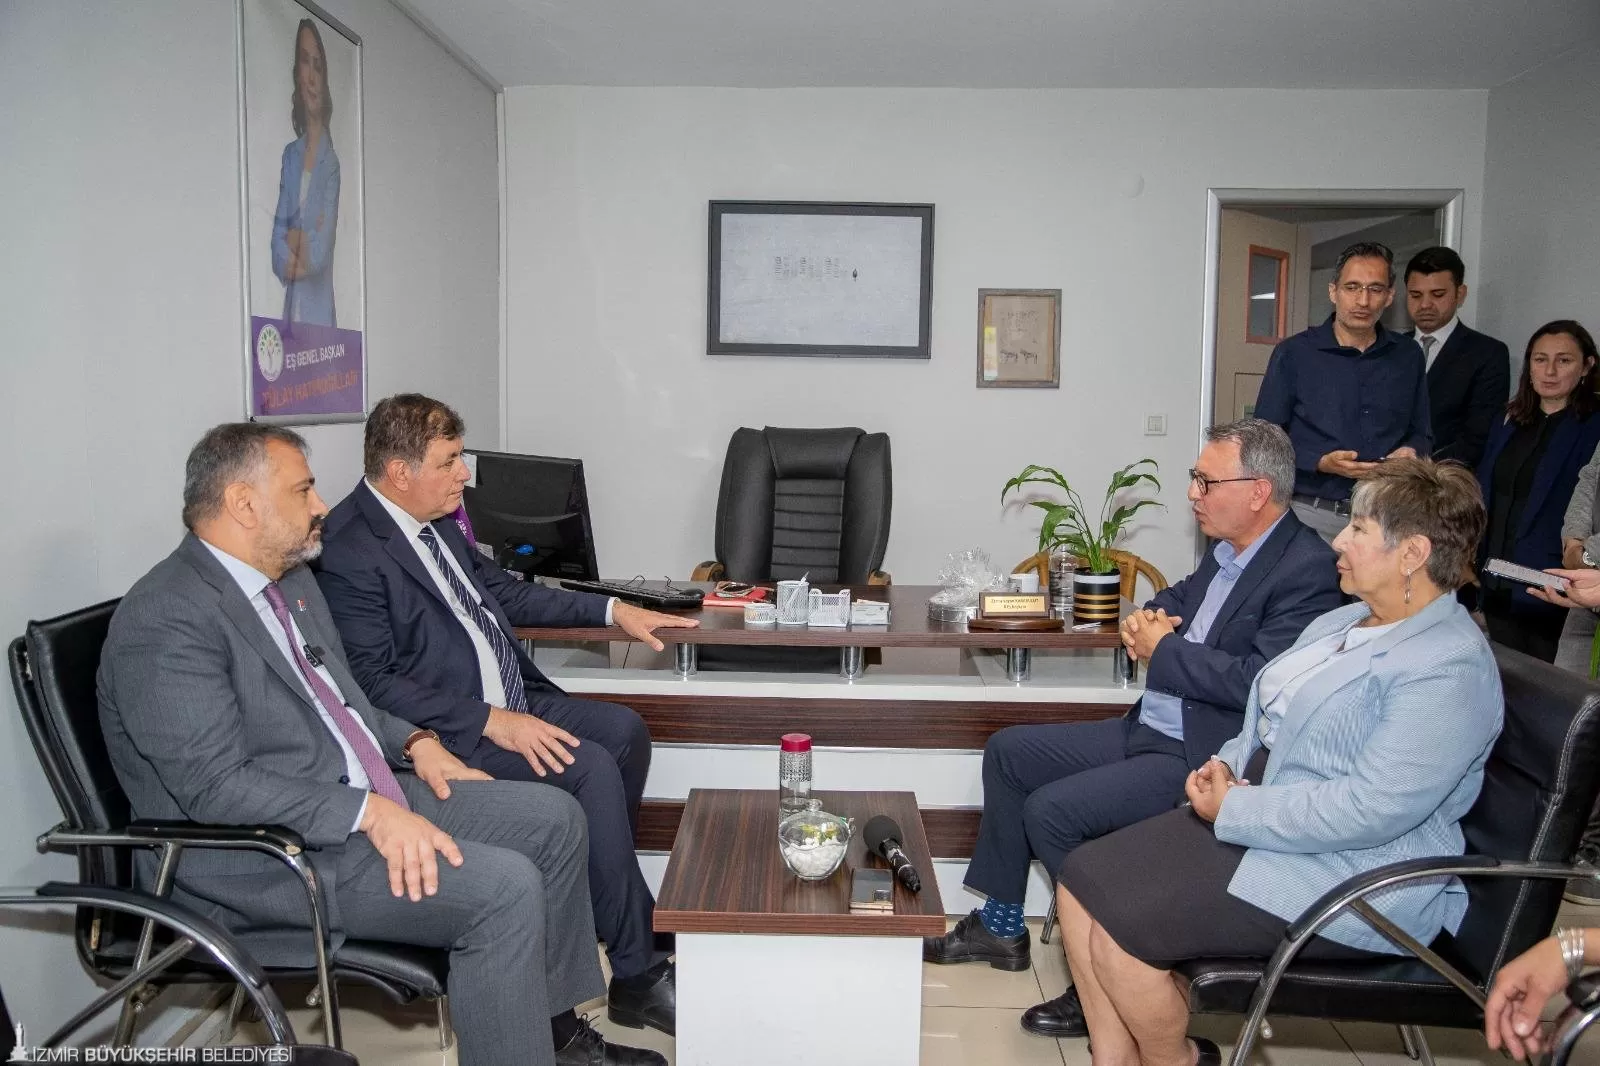 İzmir Büyükşehir Belediye Başkanı Dr. Cemil Tugay, siyasi partiler turunda DEM Parti İzmir İl Başkanlığı'nı ziyaret ederek iş birliği ve katılımcı yönetim vurgusu yaptı.